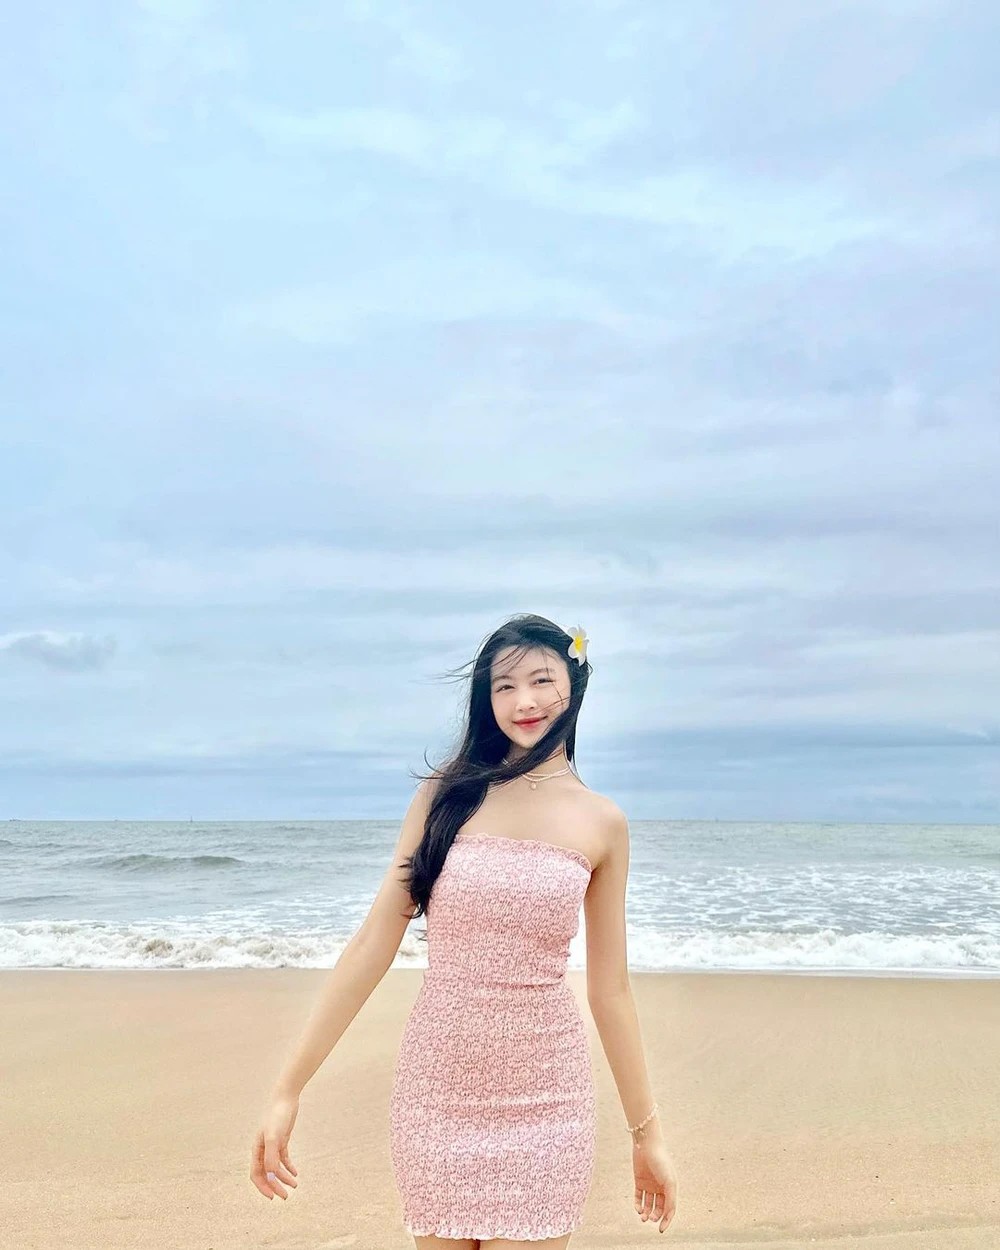 Gu mặc đi biển thu hút nhất từ trước đến nay của con gái Quyền Linh, Lưu Thiên Hương - 3